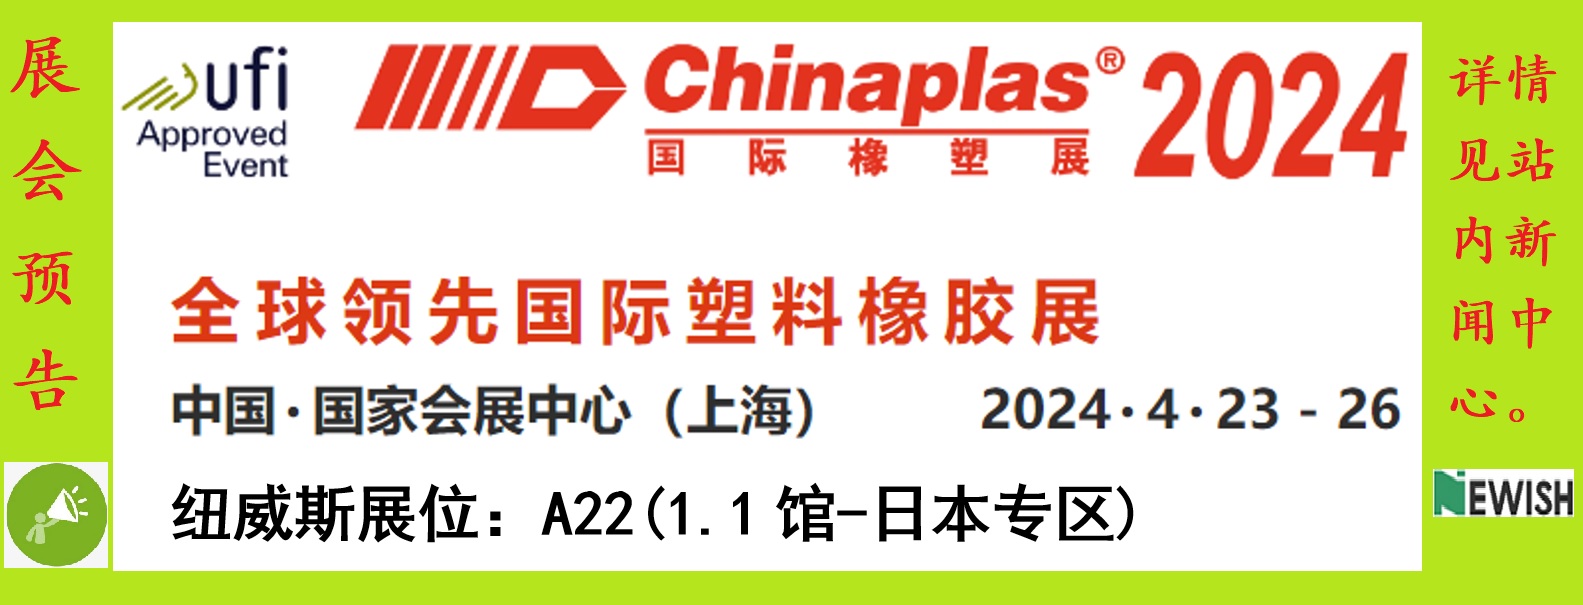 诚邀莅临「CHINAPLAS 2018国际橡塑展」